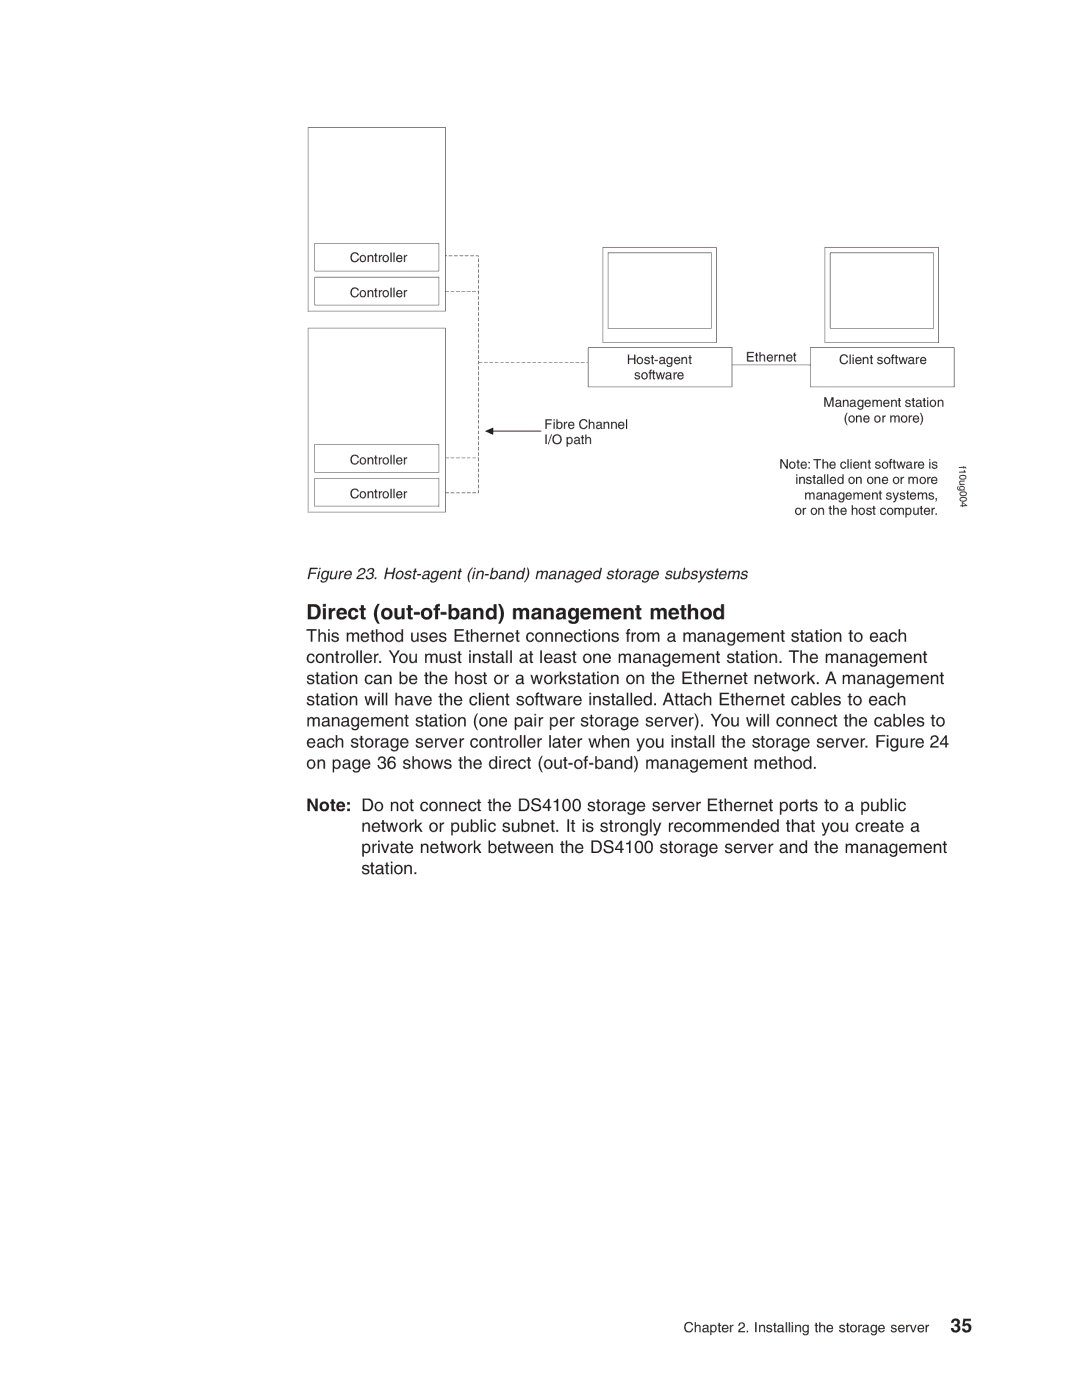 IBM Partner Pavilion DS4100 manual Direct out-of-band management method 